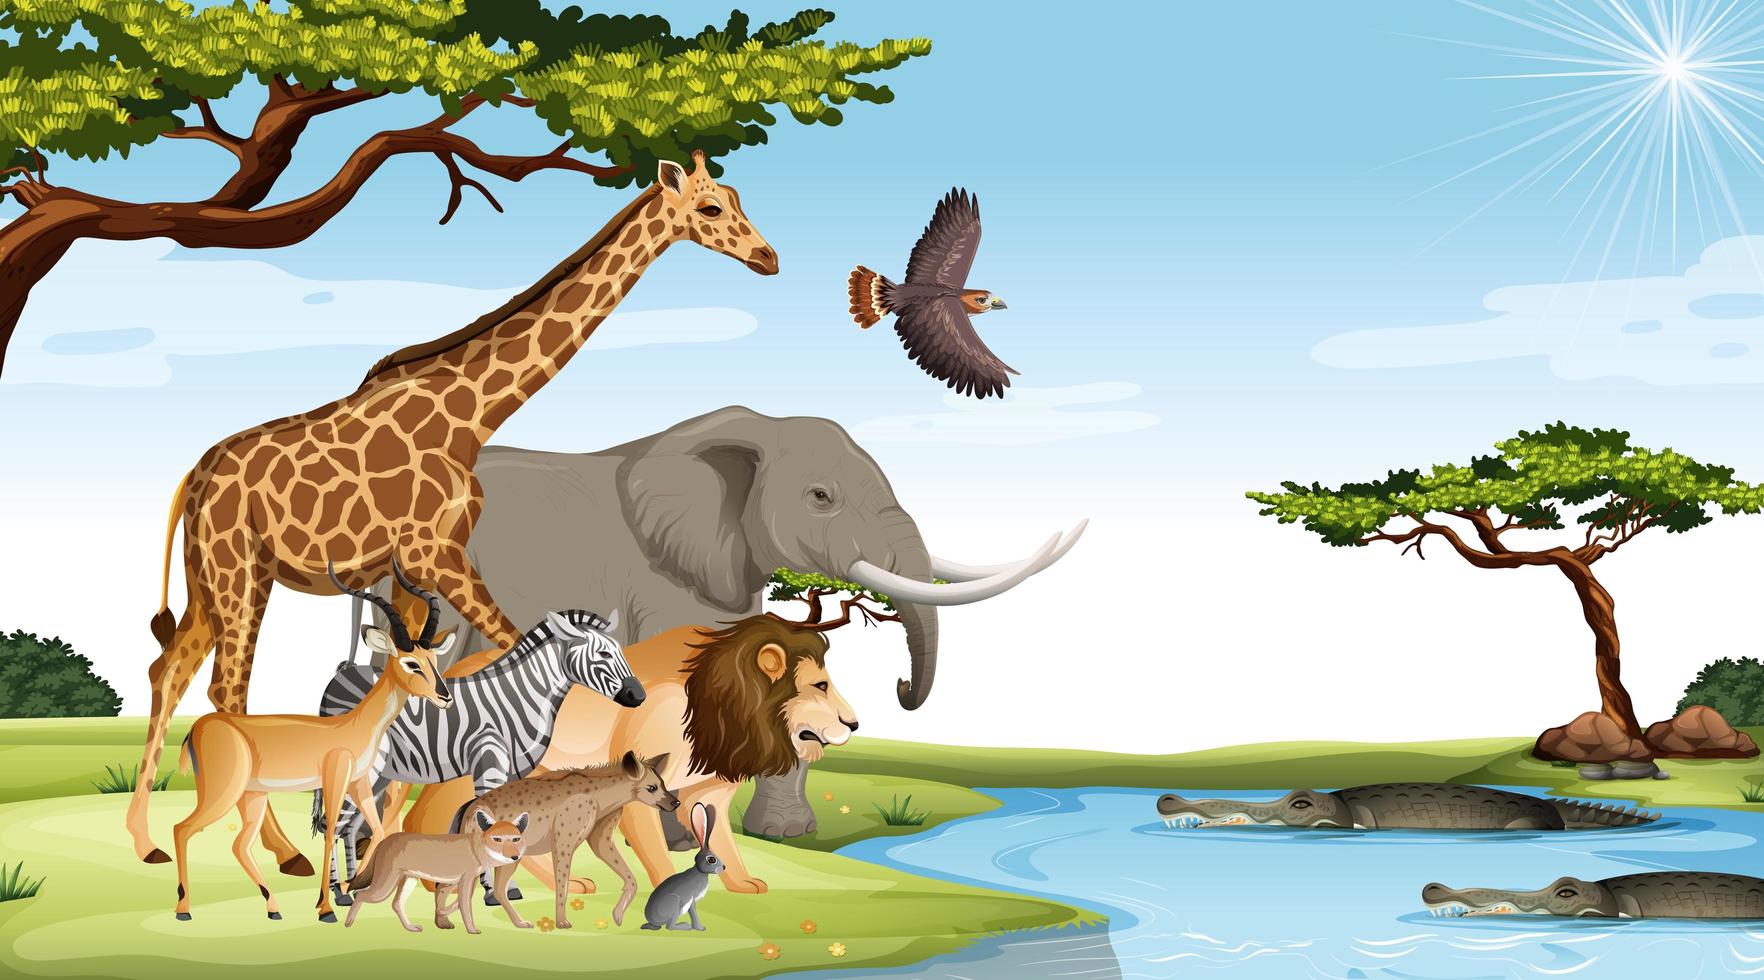 Grupo de animales salvajes africanos en la escena del bosque vector